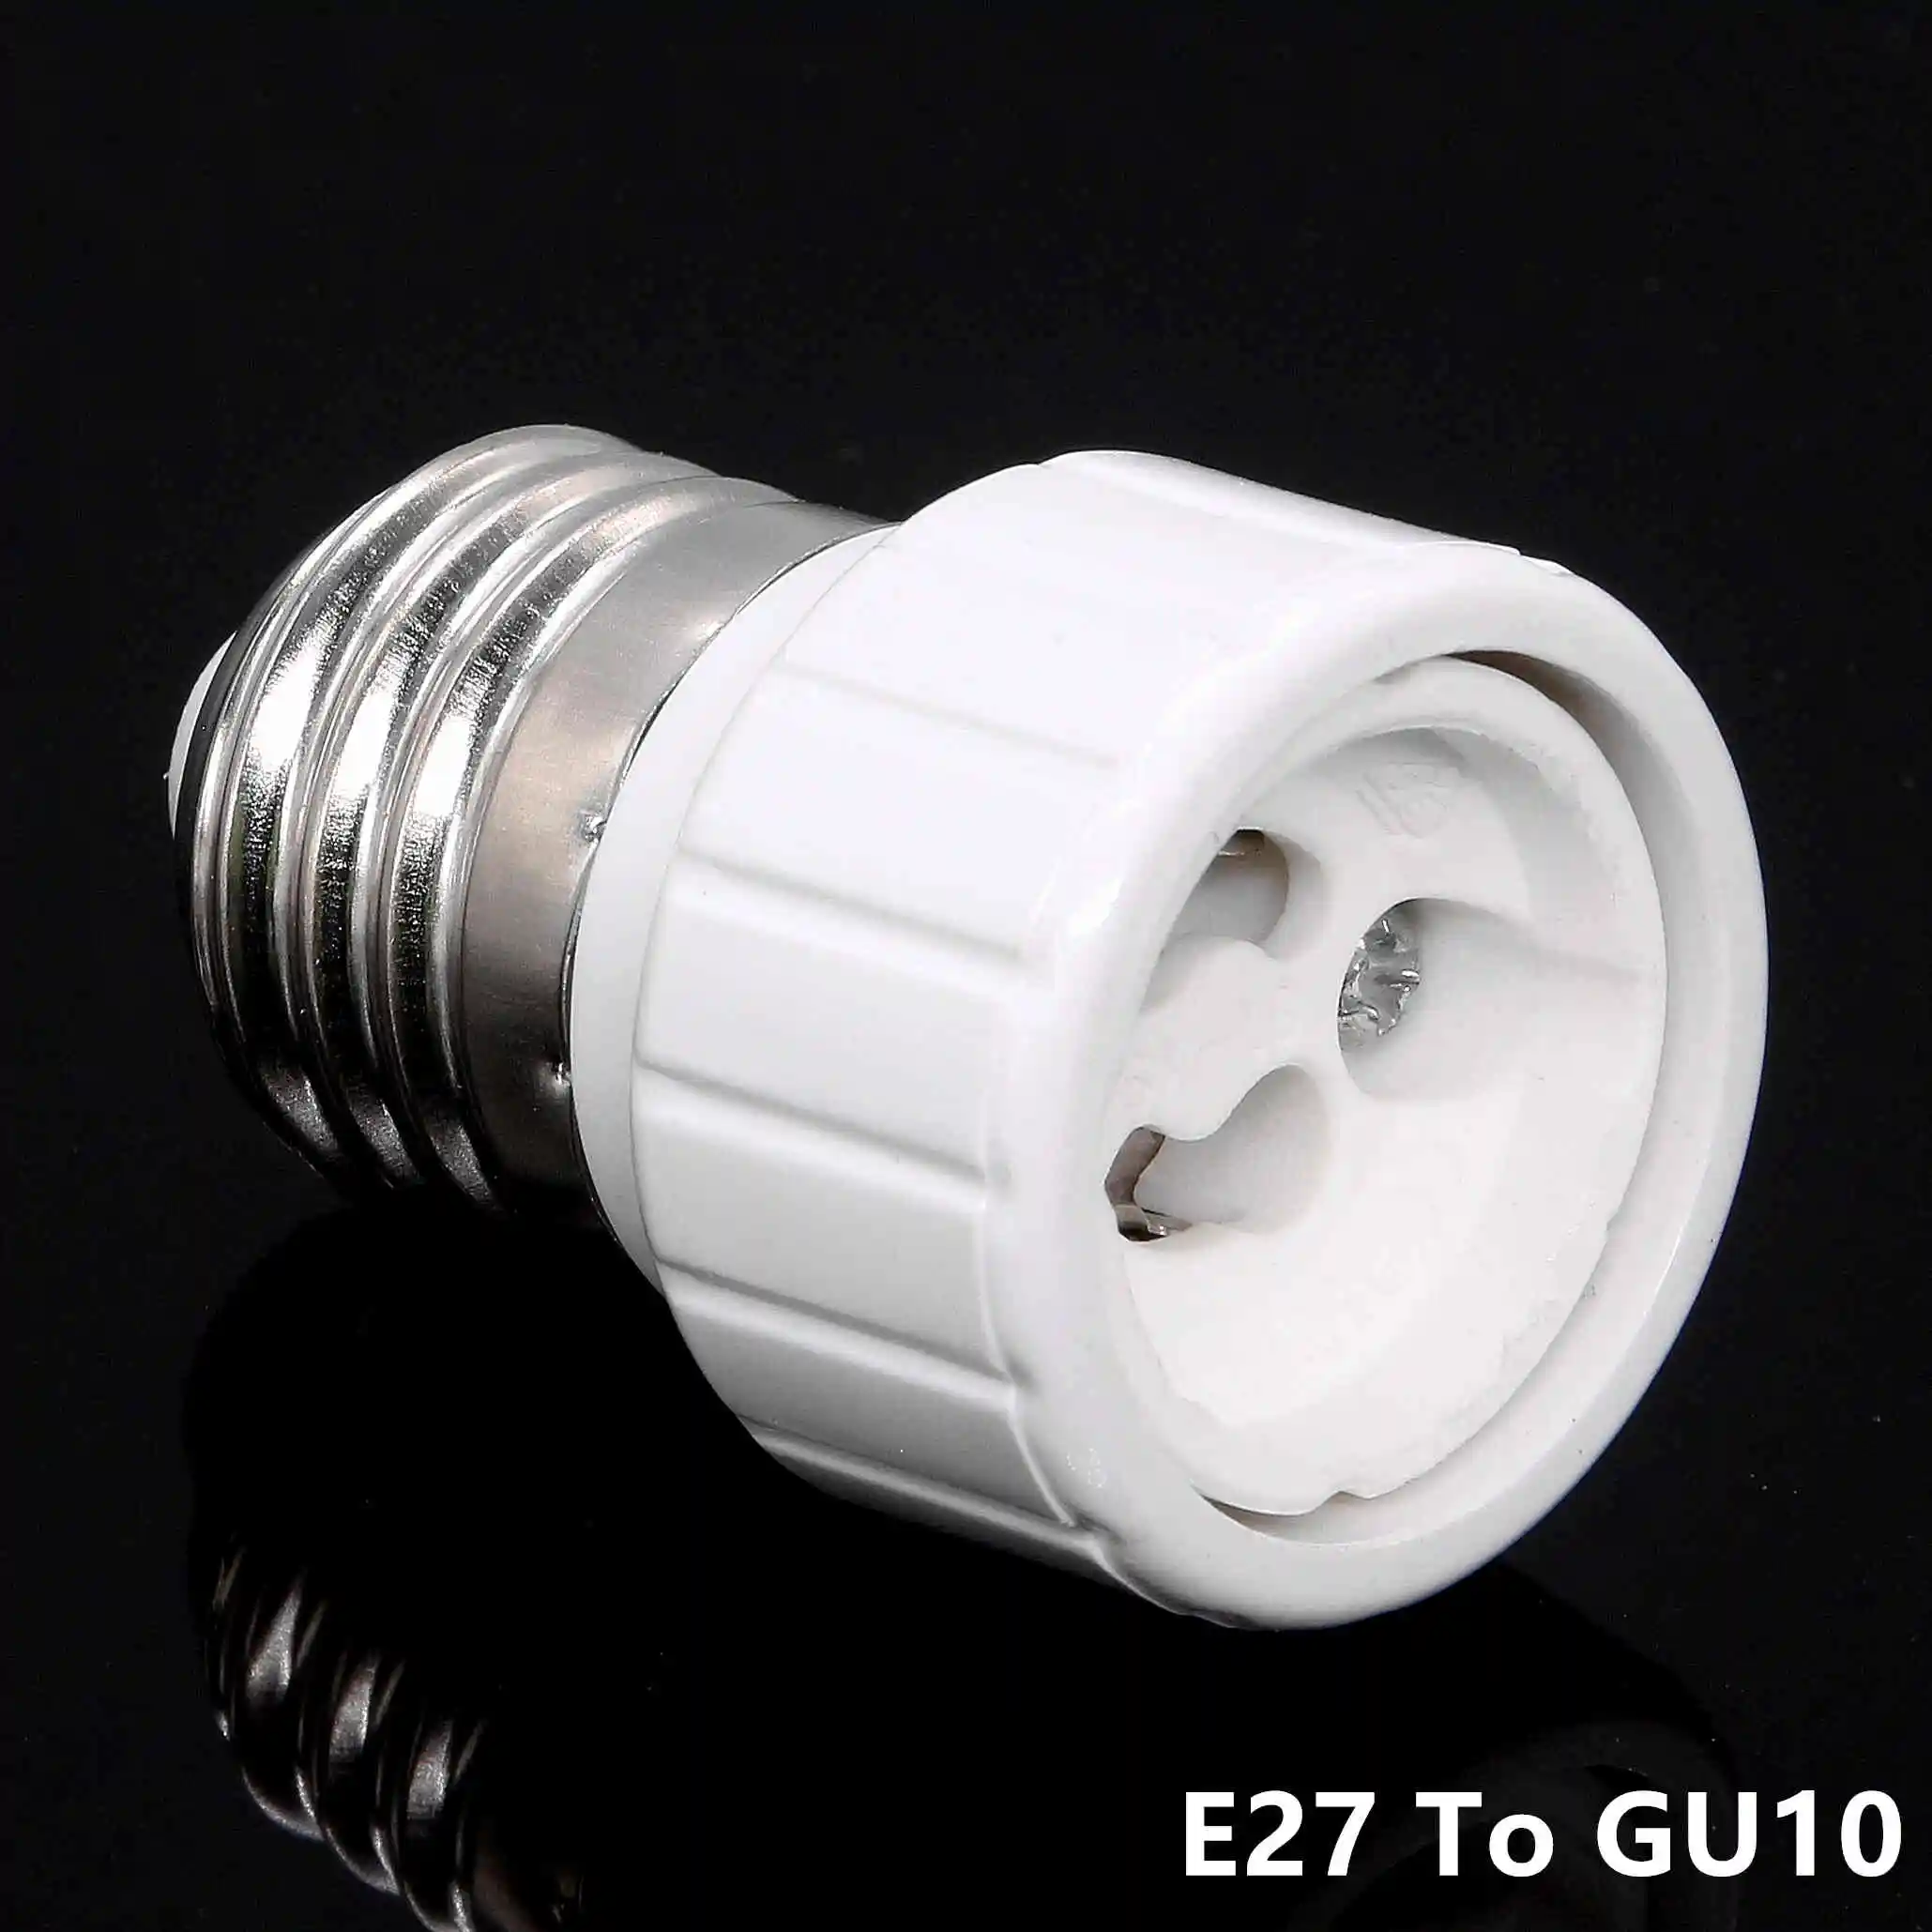 1x конвертер E27 E14 MR16 GU10 G9 светодиодный адаптер для ламп высокое качество материал огнеупорный разъем адаптер держатель лампы - Испускаемый цвет: E27 To GU10